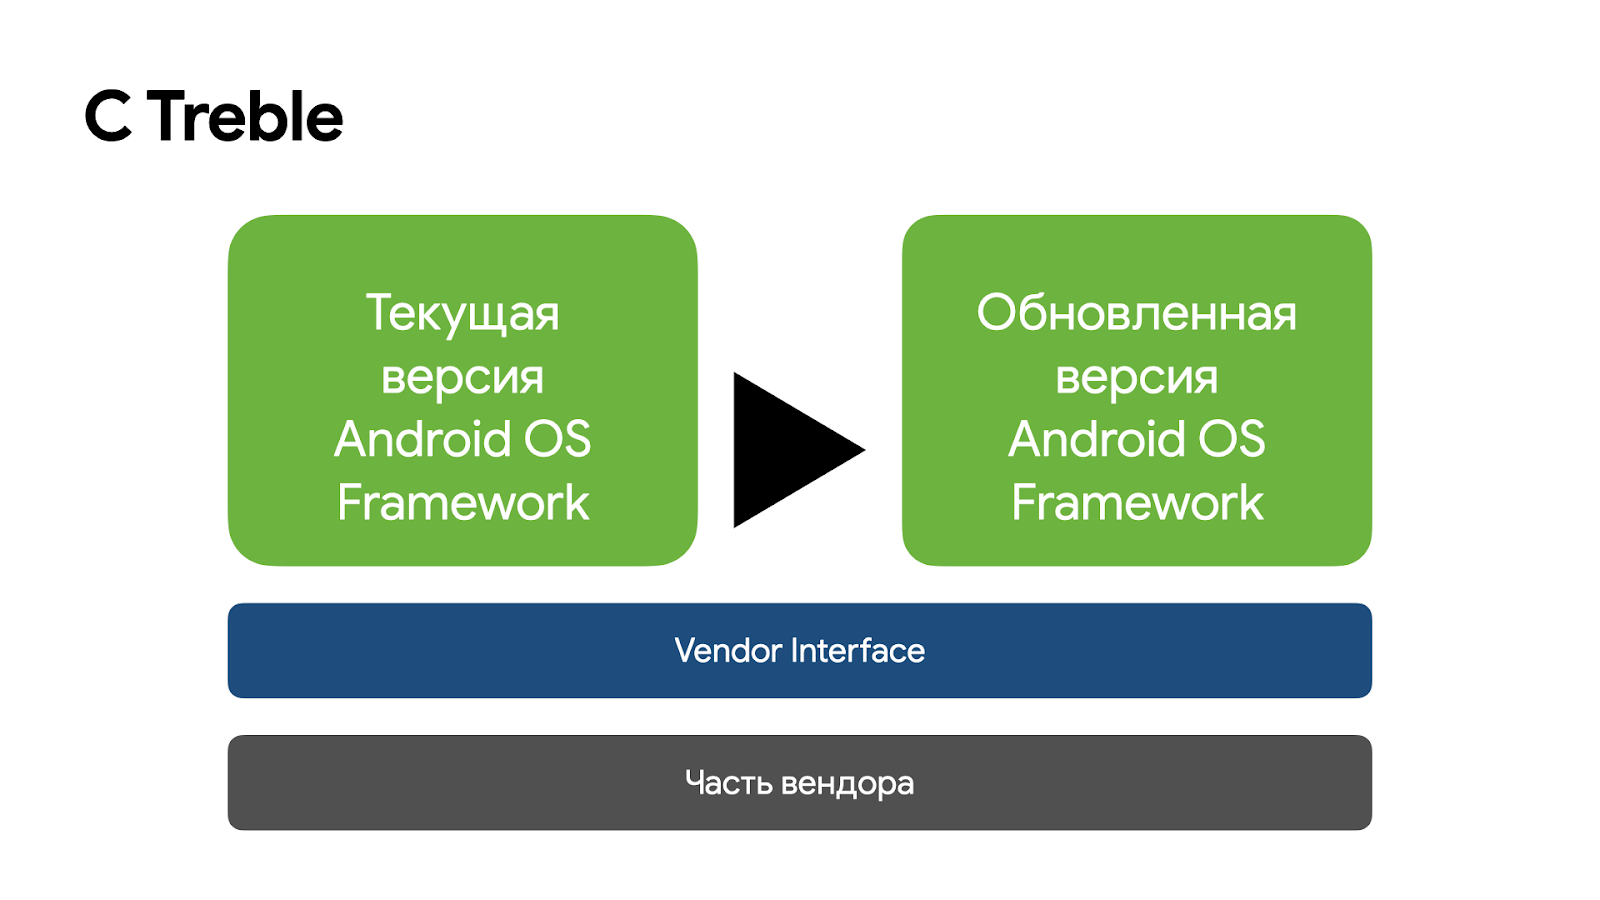 Обновление Android на устройствах с поддержкой Treble